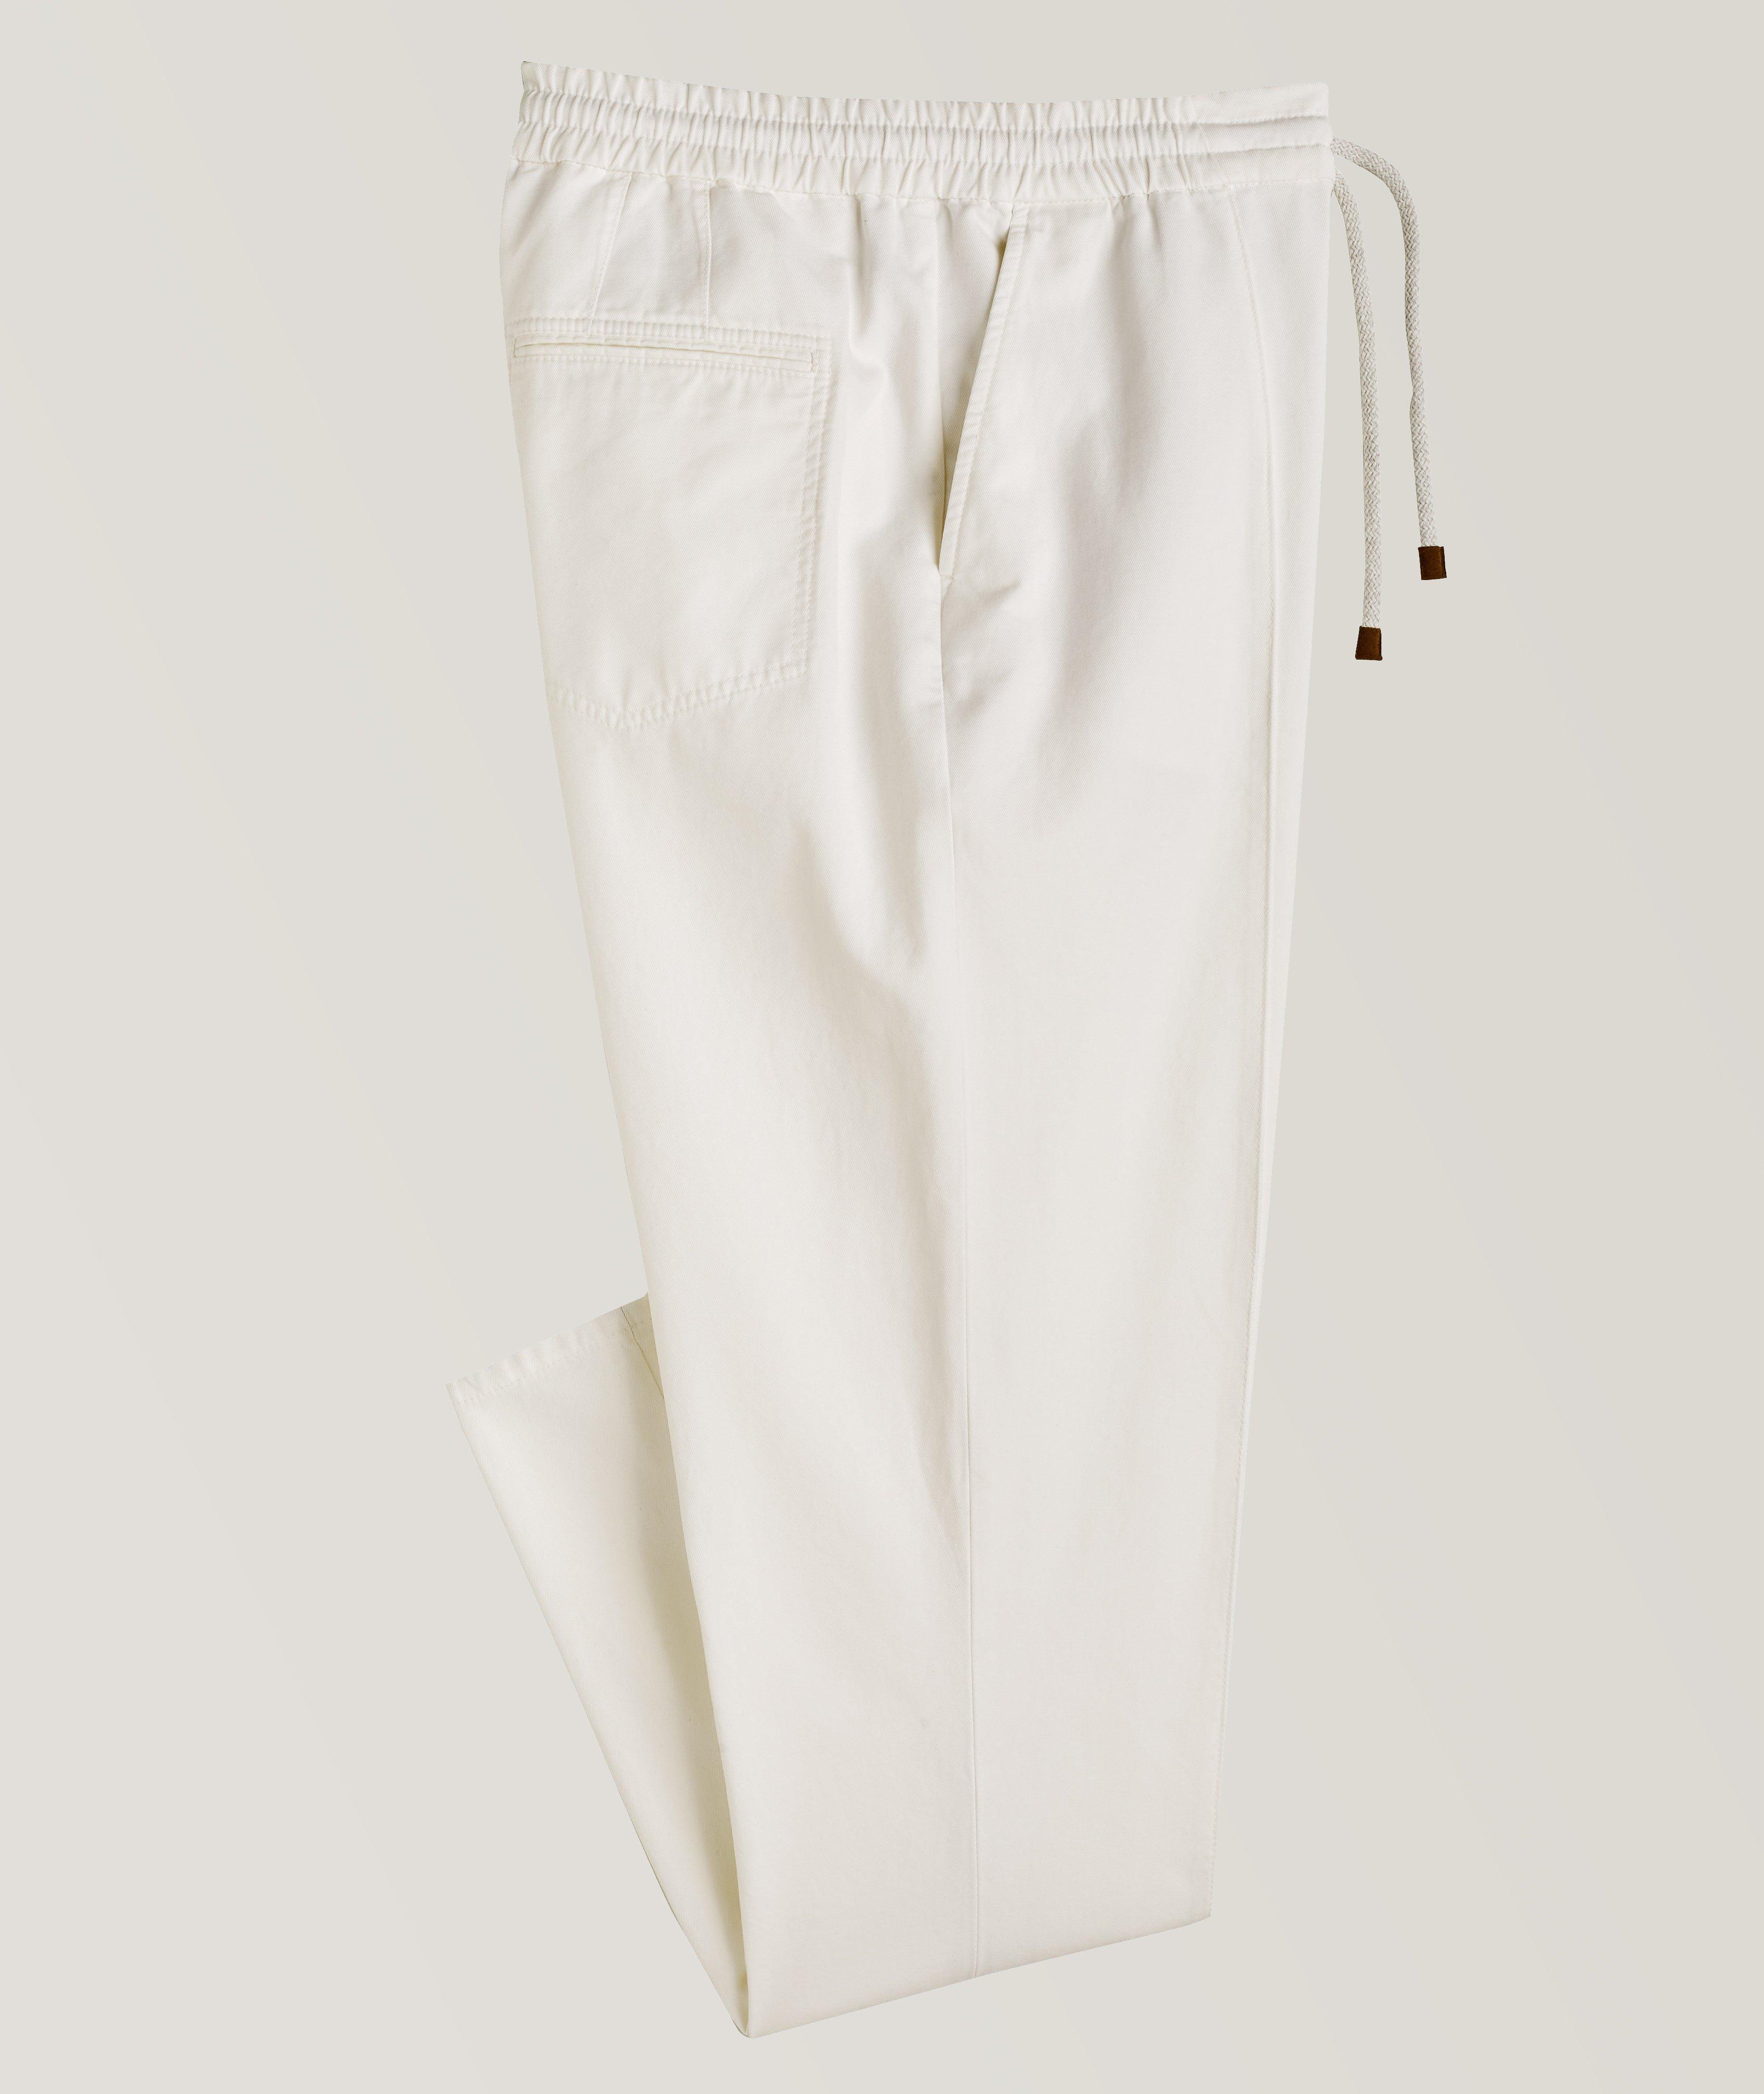 Brunello Cucinelli Cotton Drawstring Dress Pants, Pants